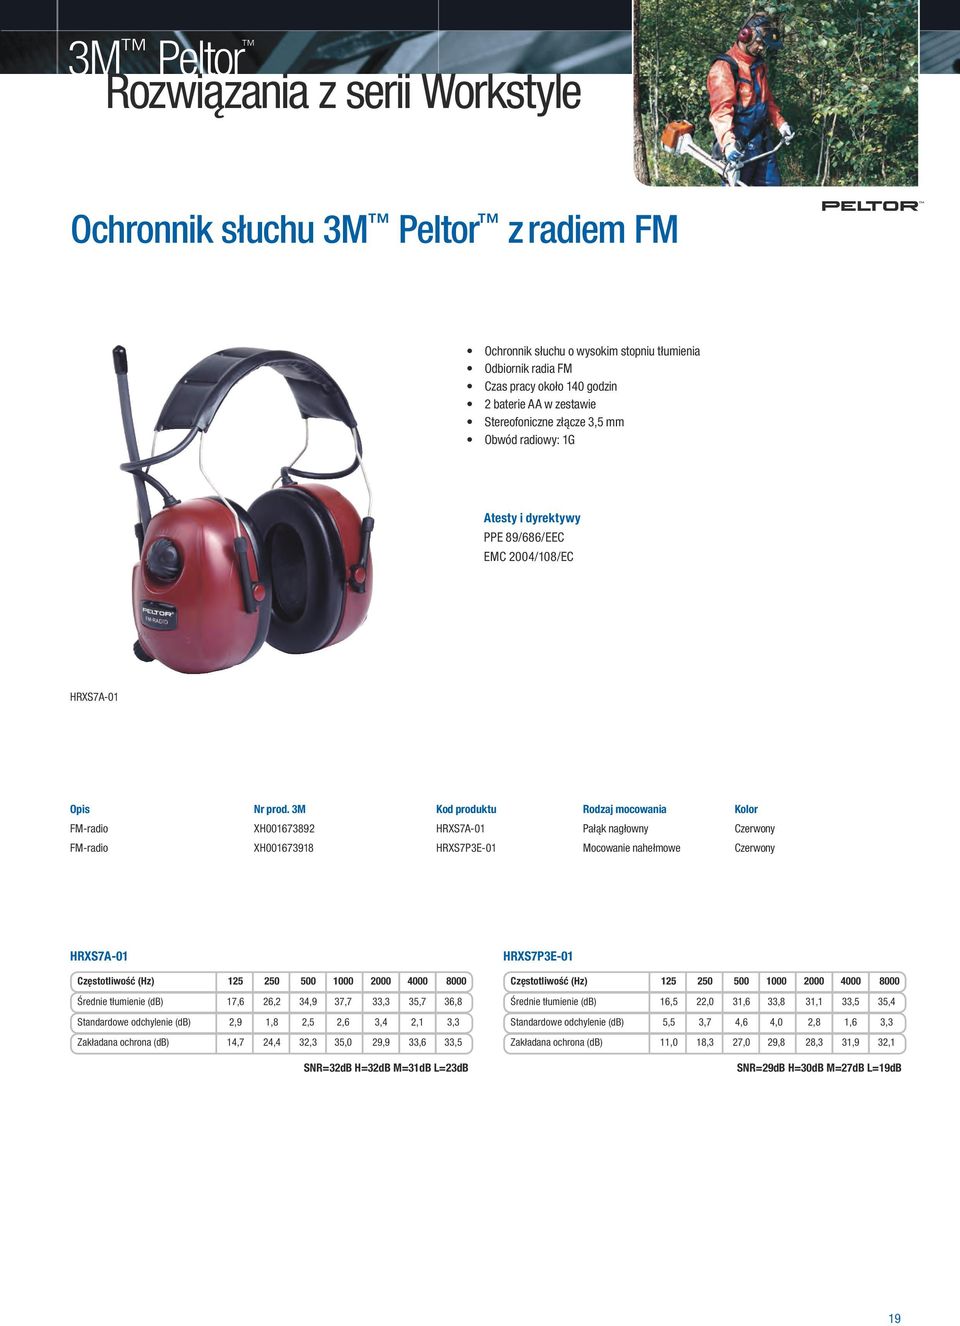 3M Kod produktu Rodzaj mocowania Kolor FM-radio XH001673892 HRXS7A-01 Pałąk nagłowny Czerwony FM-radio XH001673918 HRXS7P3E-01 Mocowanie nahełmowe Czerwony HRXS7A-01 Średnie tłumienie (db) 17,6 26,2